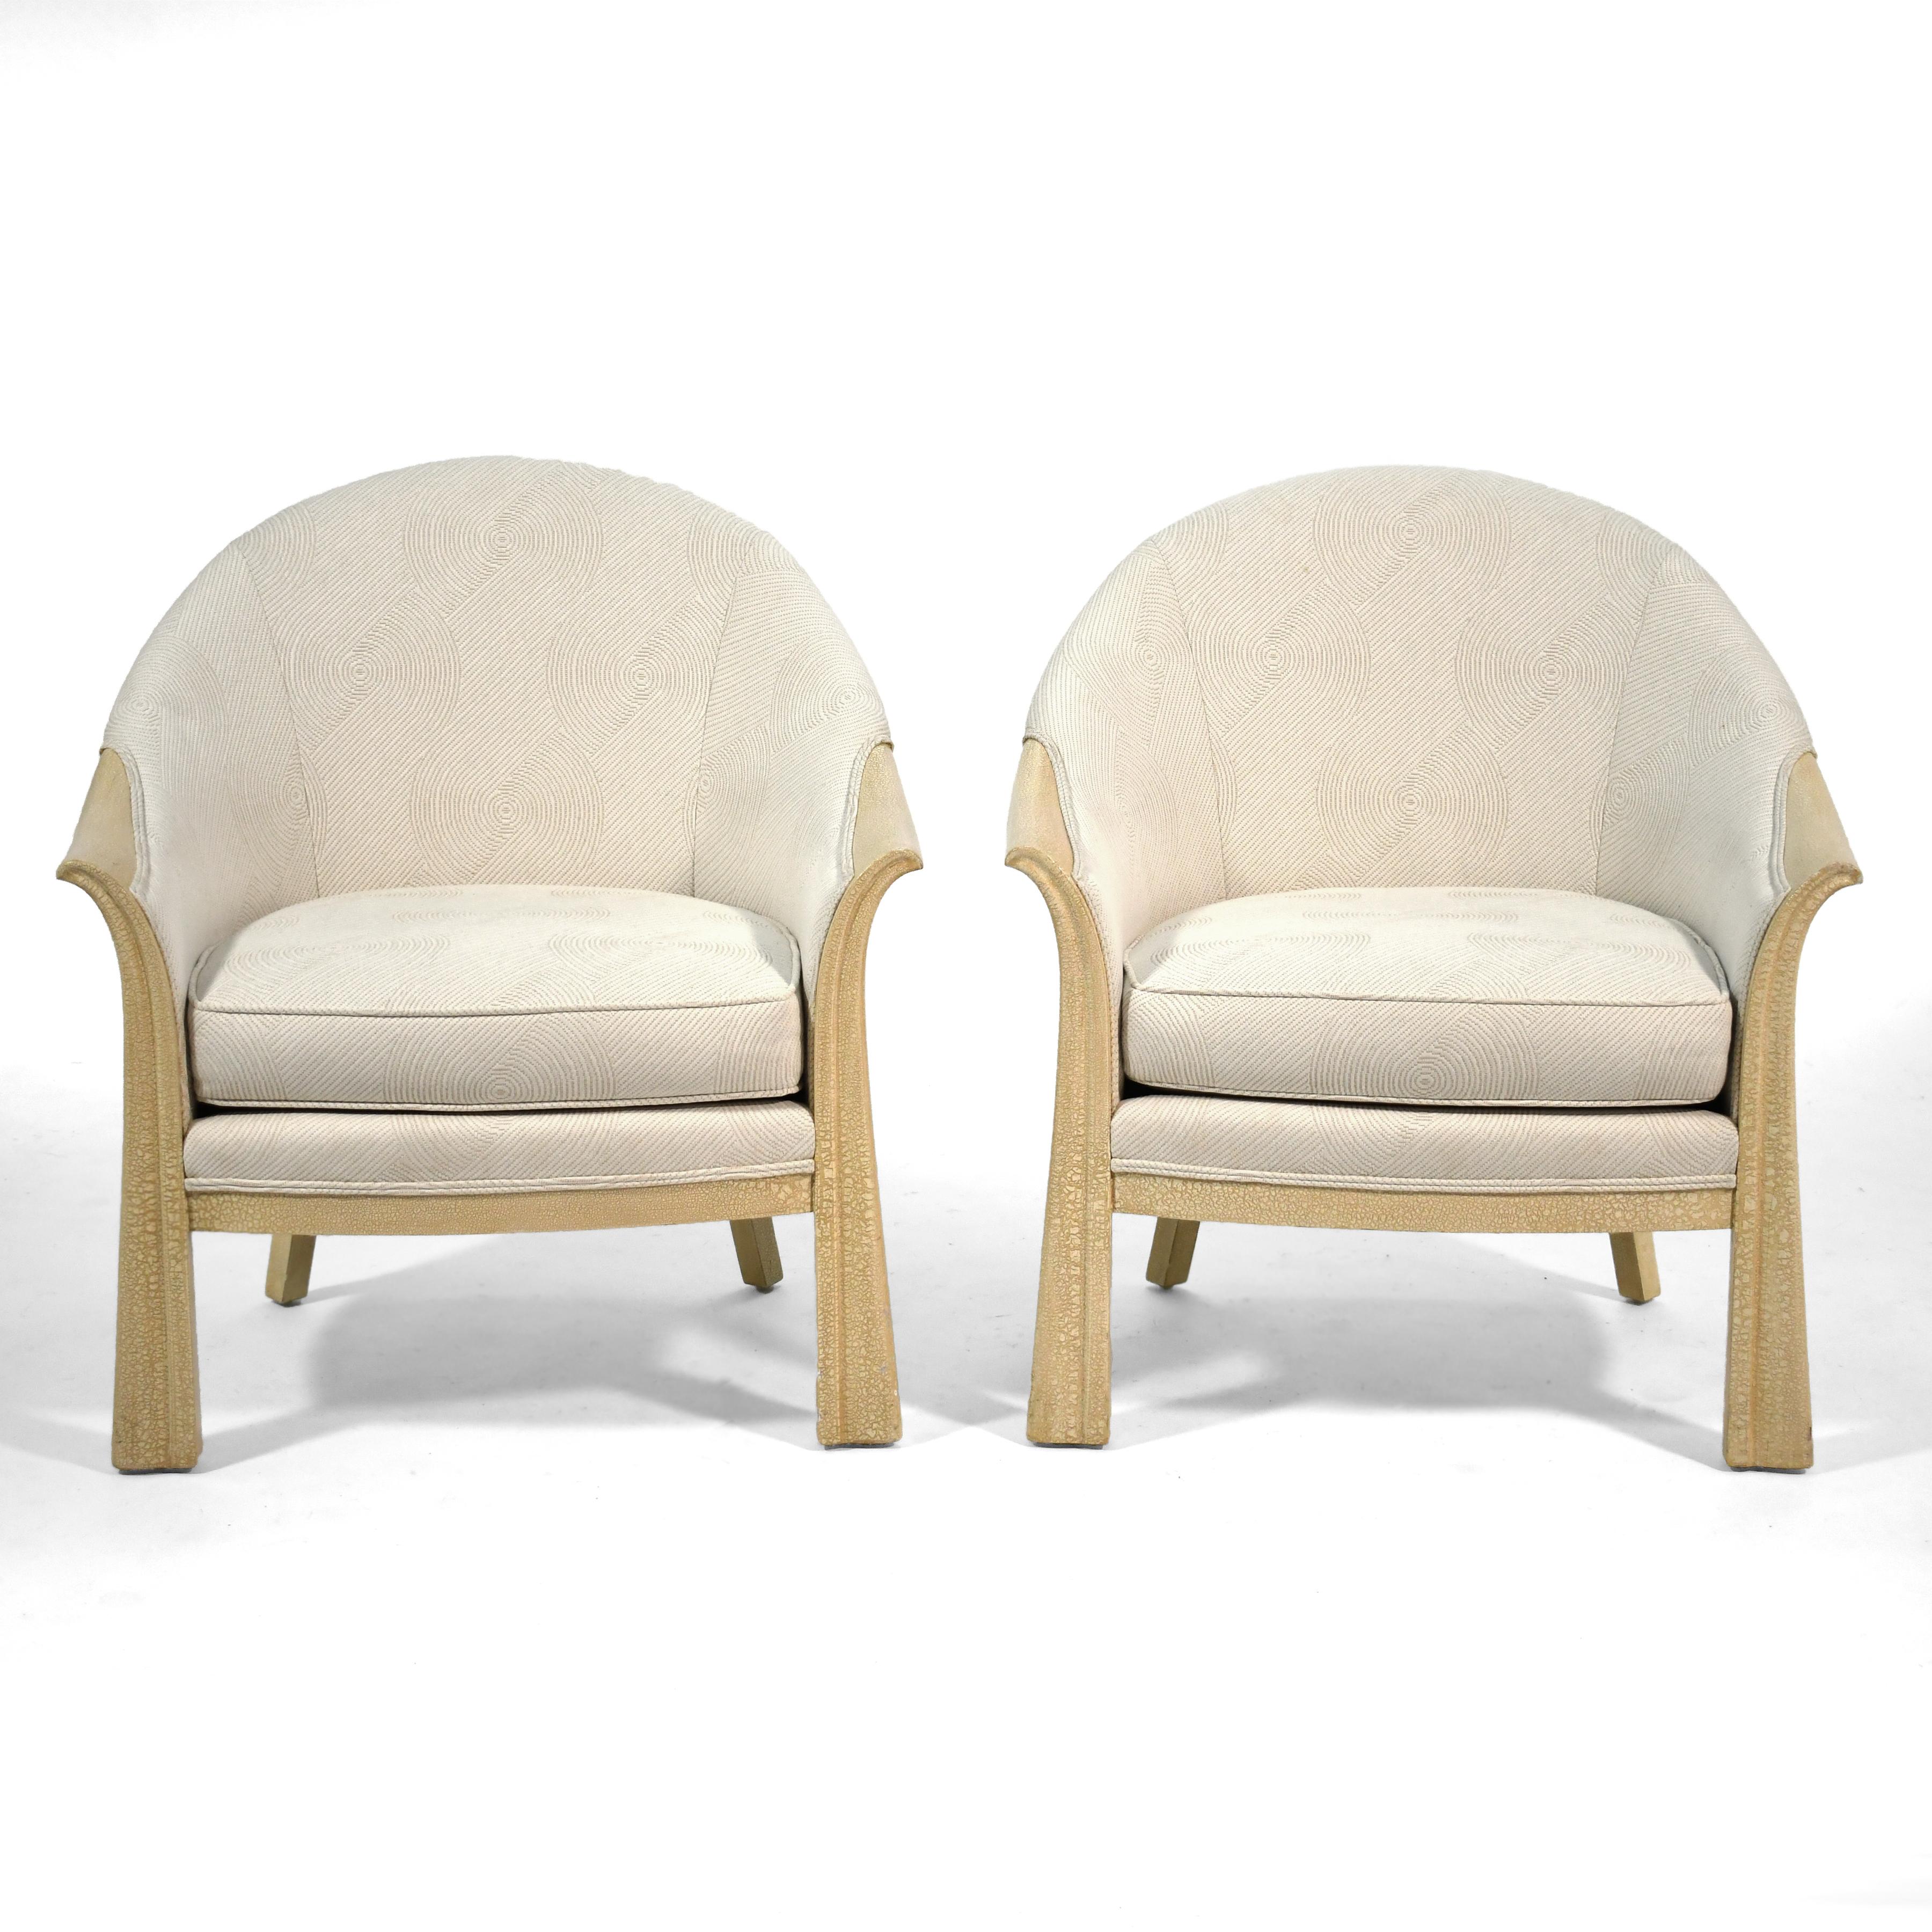 Ces deux jolies chaises longues sont des reproductions d'un dessin de Pierre Chareau. Elles ont été commandées par l'important architecte d'intérieur de Chicago, Roy Klipp (1923-2010), et fabriquées par Interior Crafts. Les cadres ont une finition